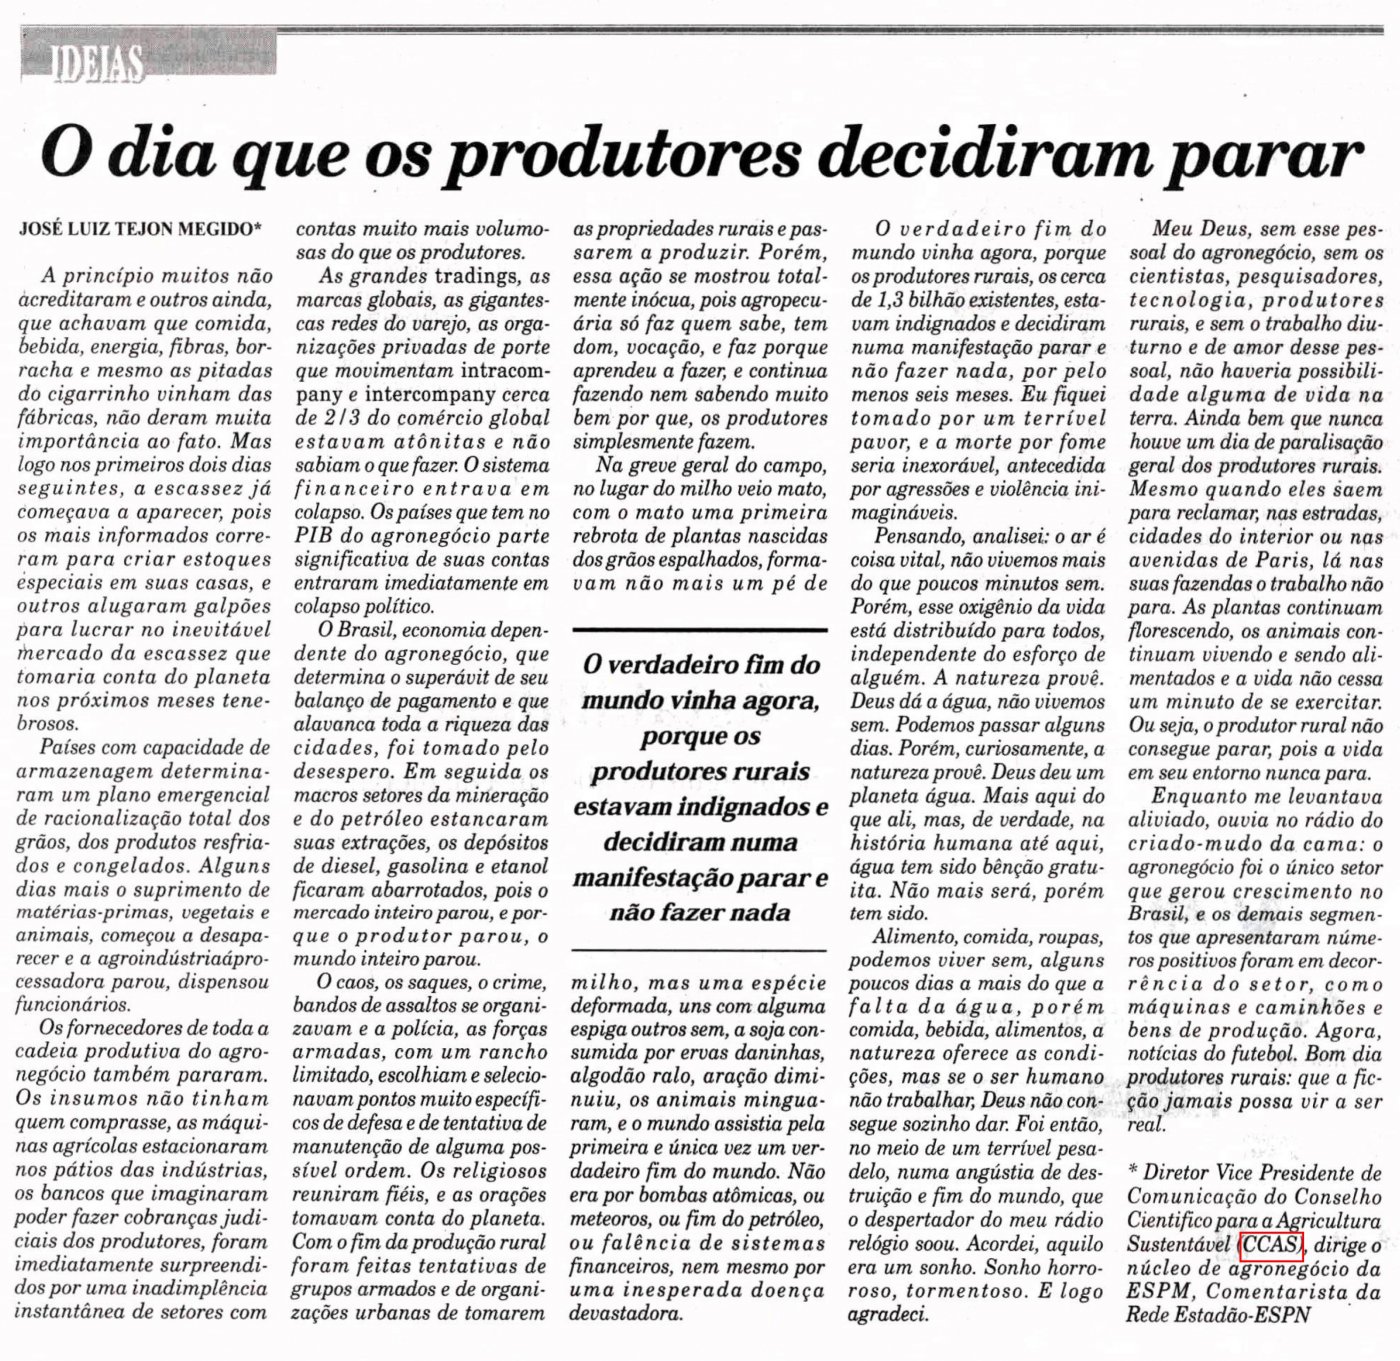 Diário do Comercio publica artigo do Vice-Presidente de Comunicação do CCAS